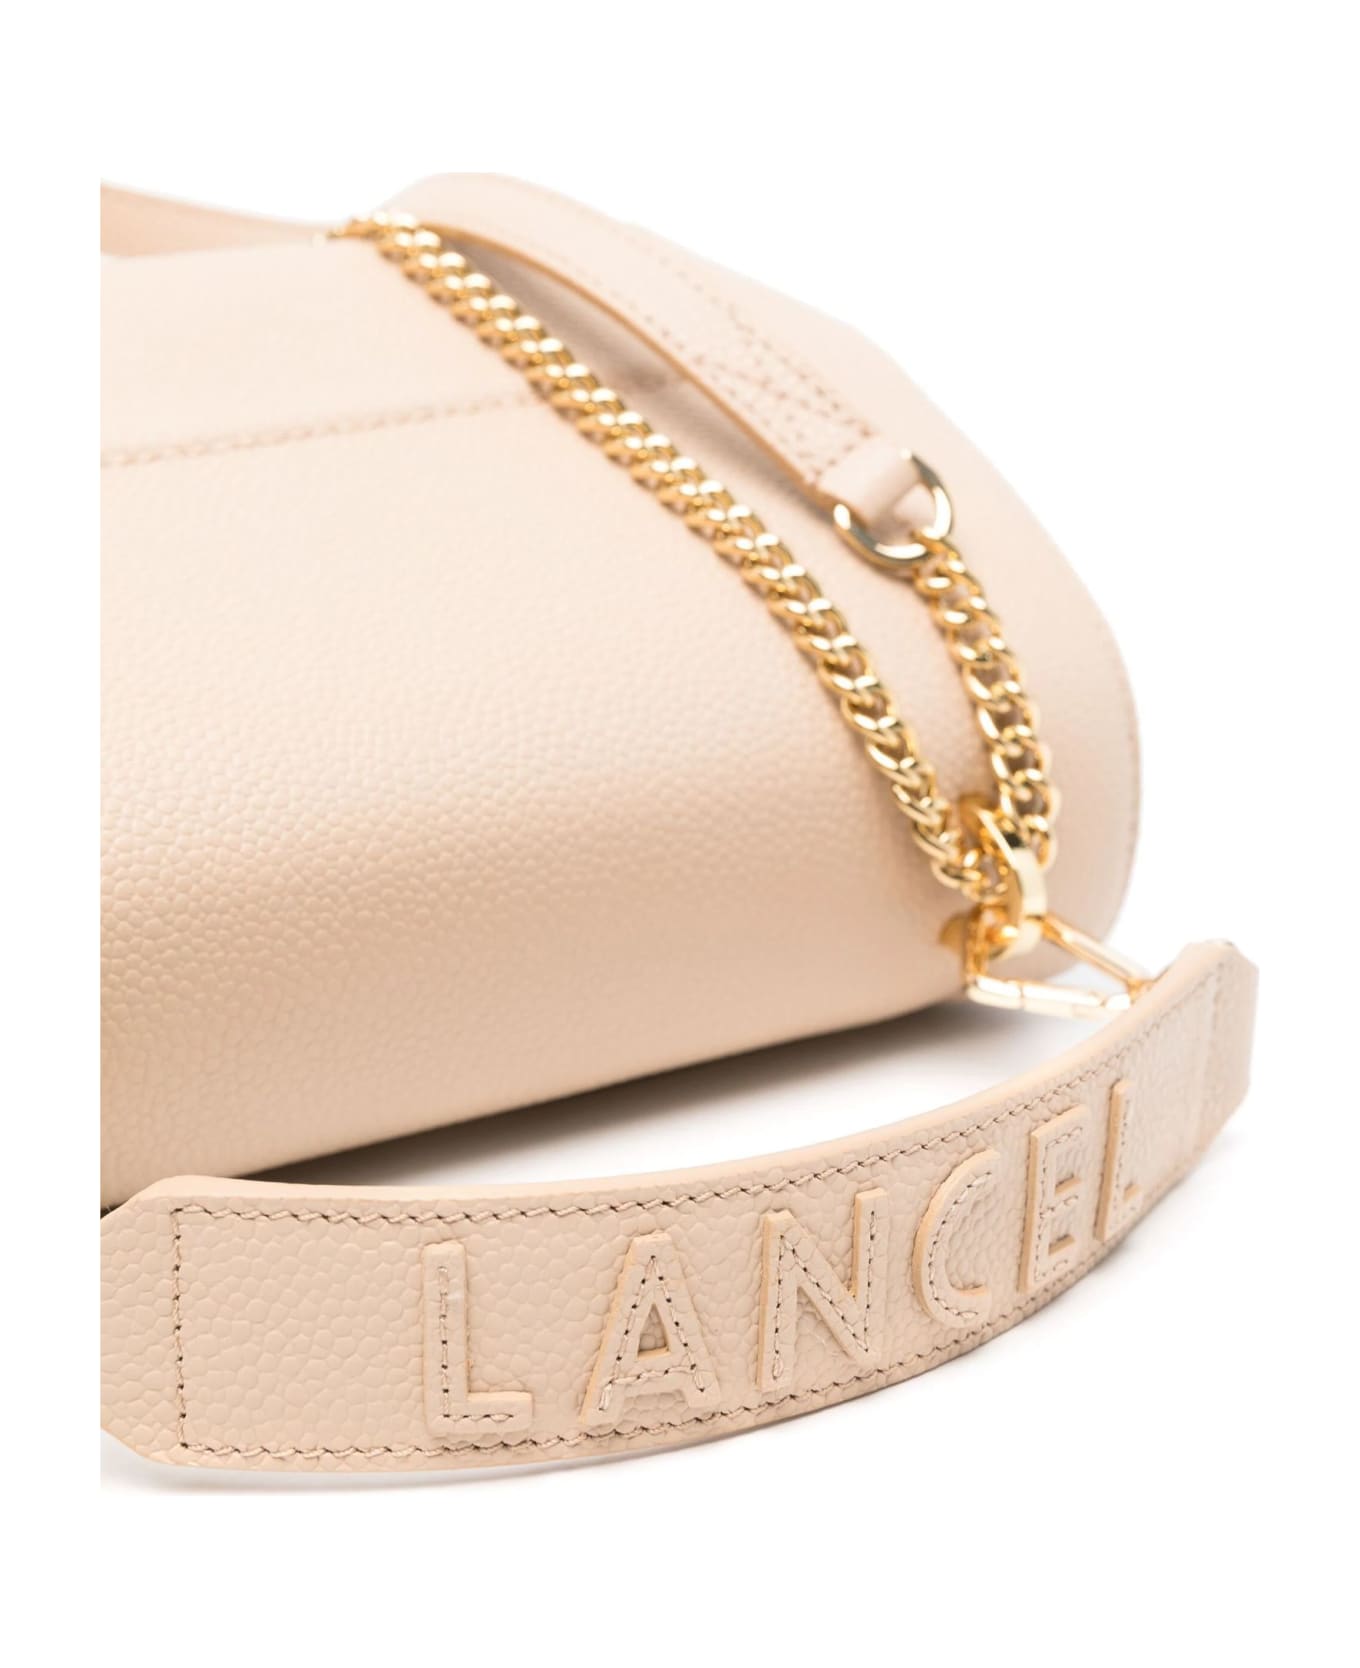 Lancel Beige Grained Leather Shoulder Bag - Beige